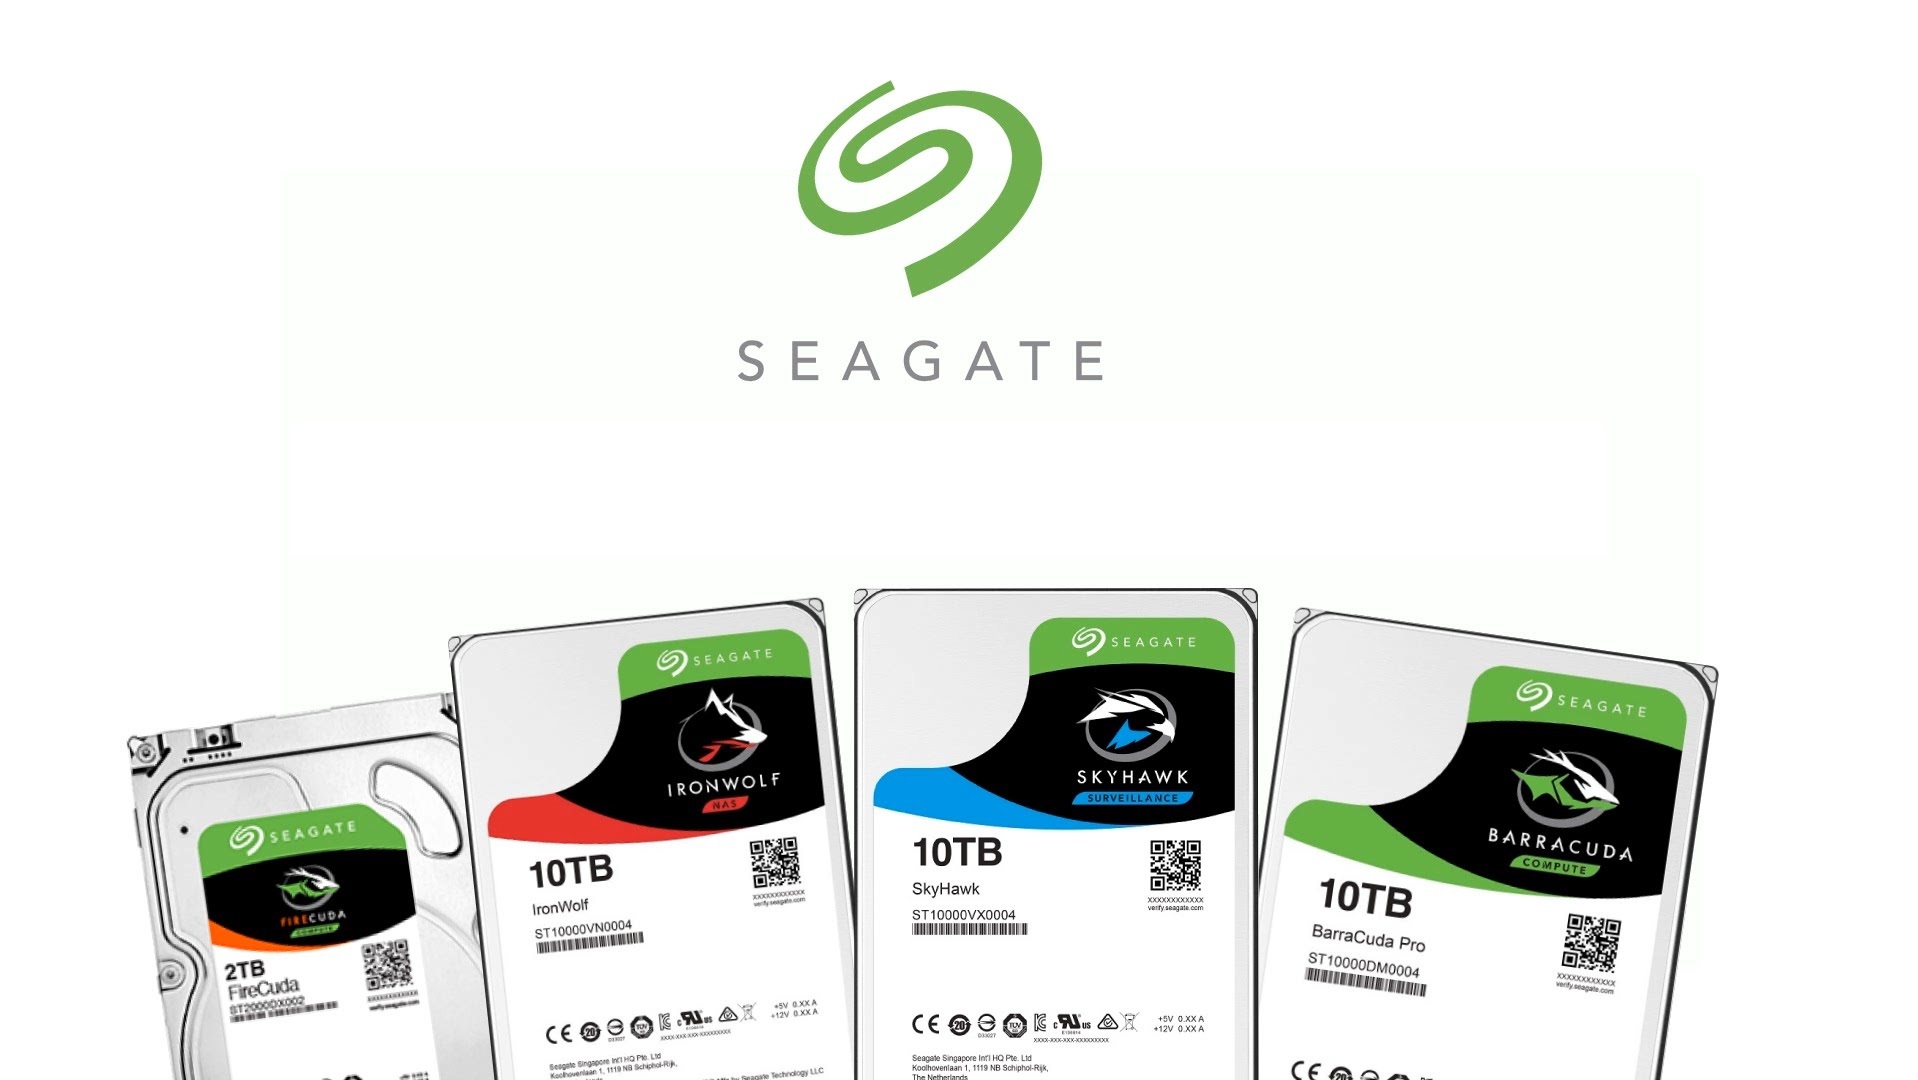 seagate-hdd-banner-bot.jpg?v=15874708058